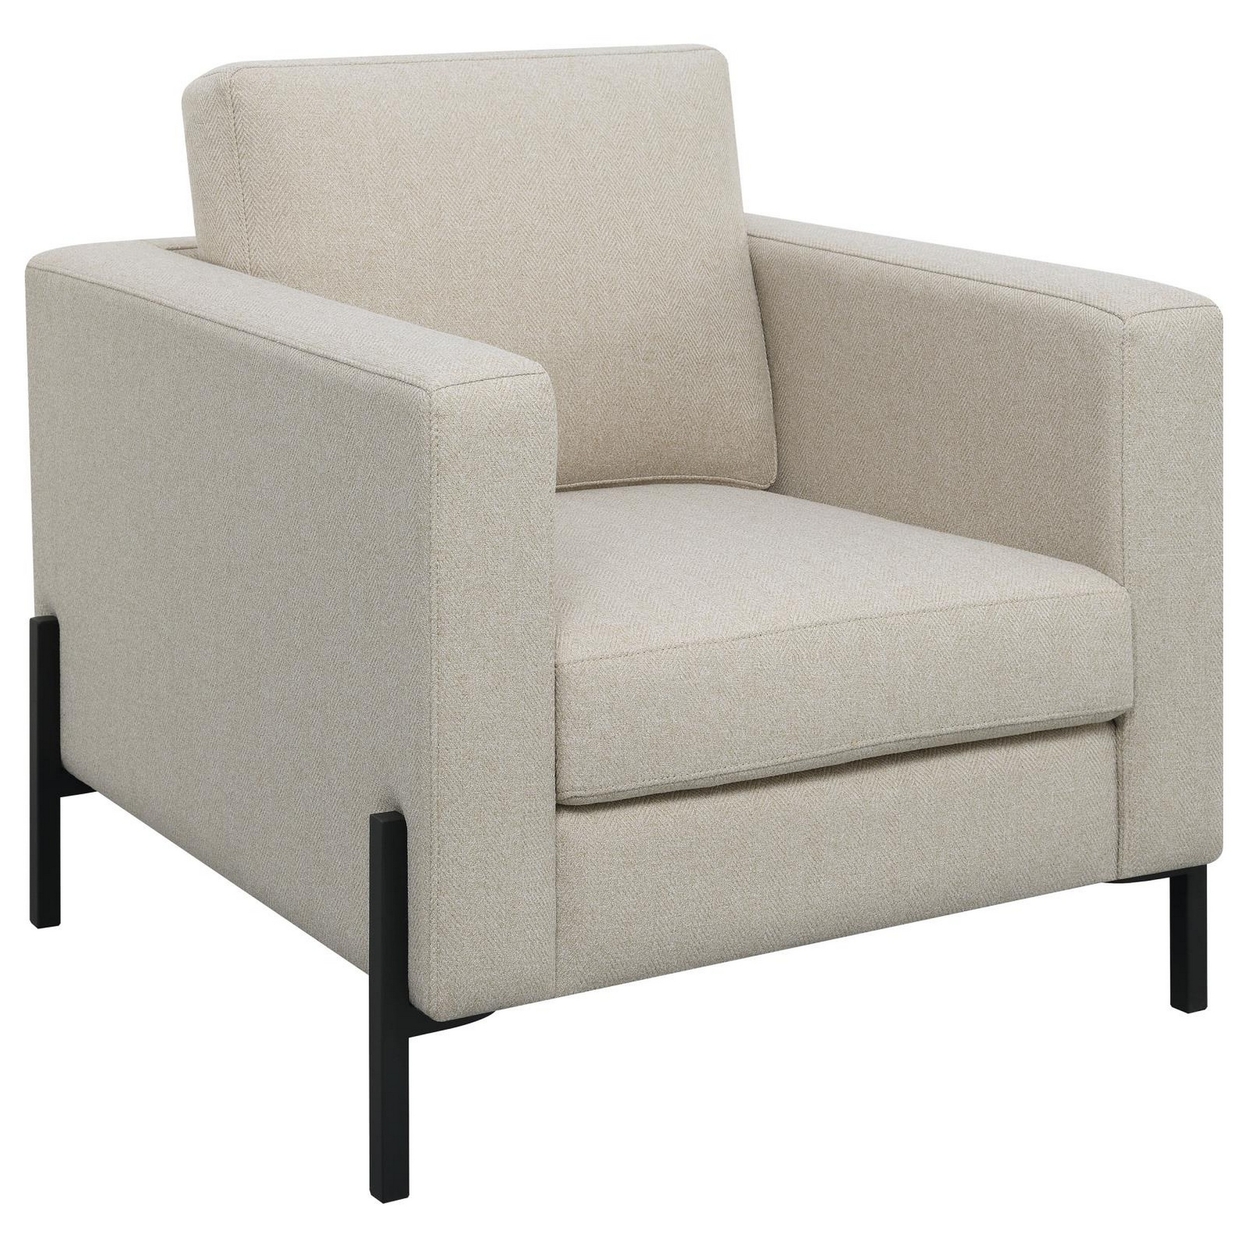 Zoya 33 Inch Chair, Track Arms, Oatmeal Beige Fabric, Herringbone Design -Saltoro Sherpi